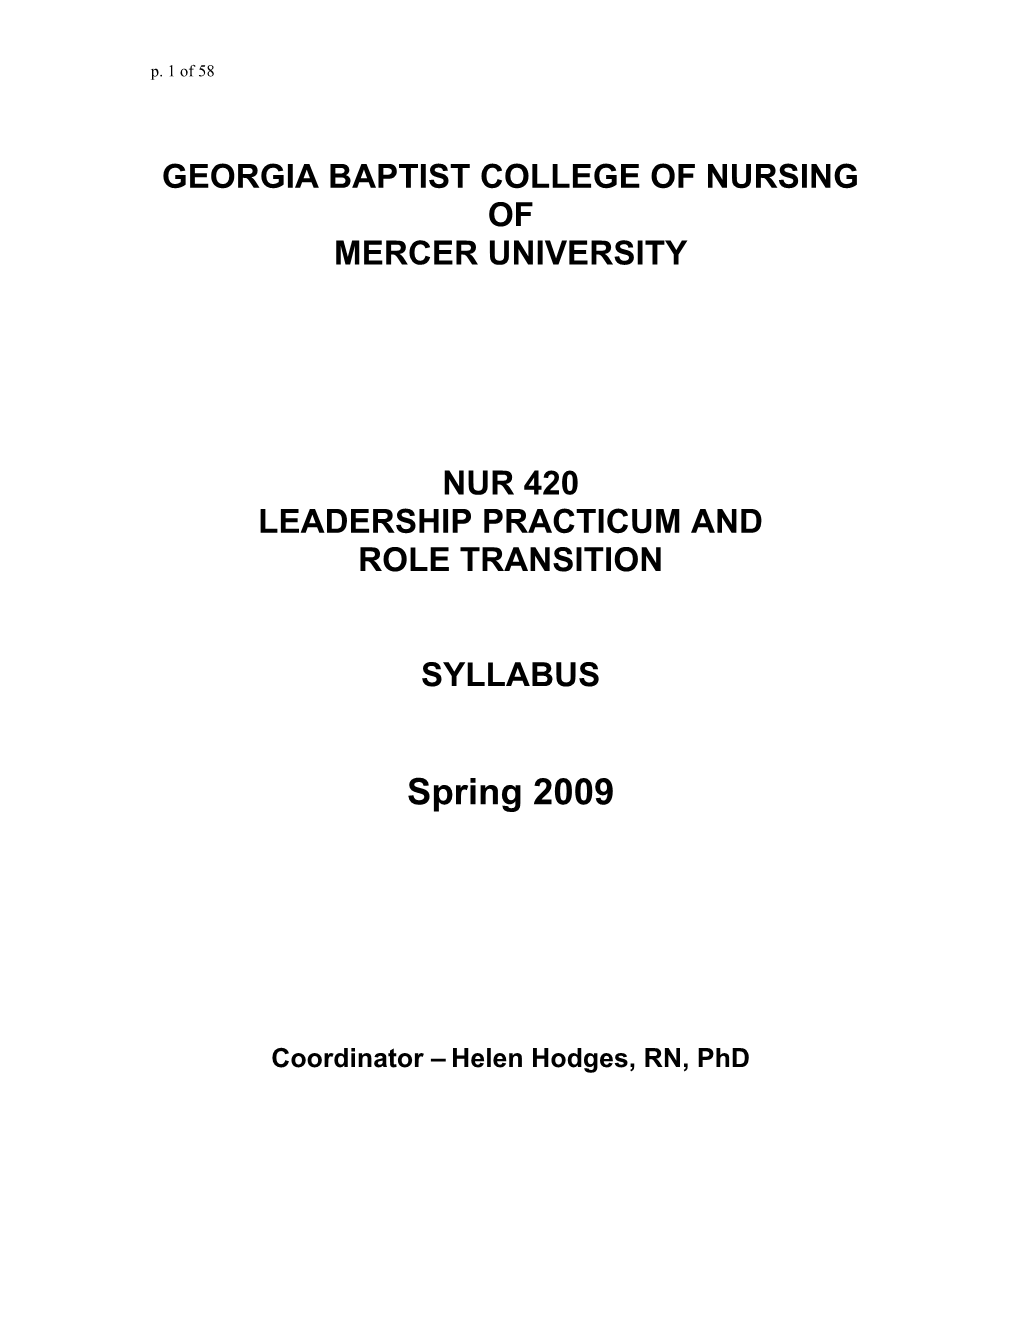 Georgia Baptist College of Nursing s2